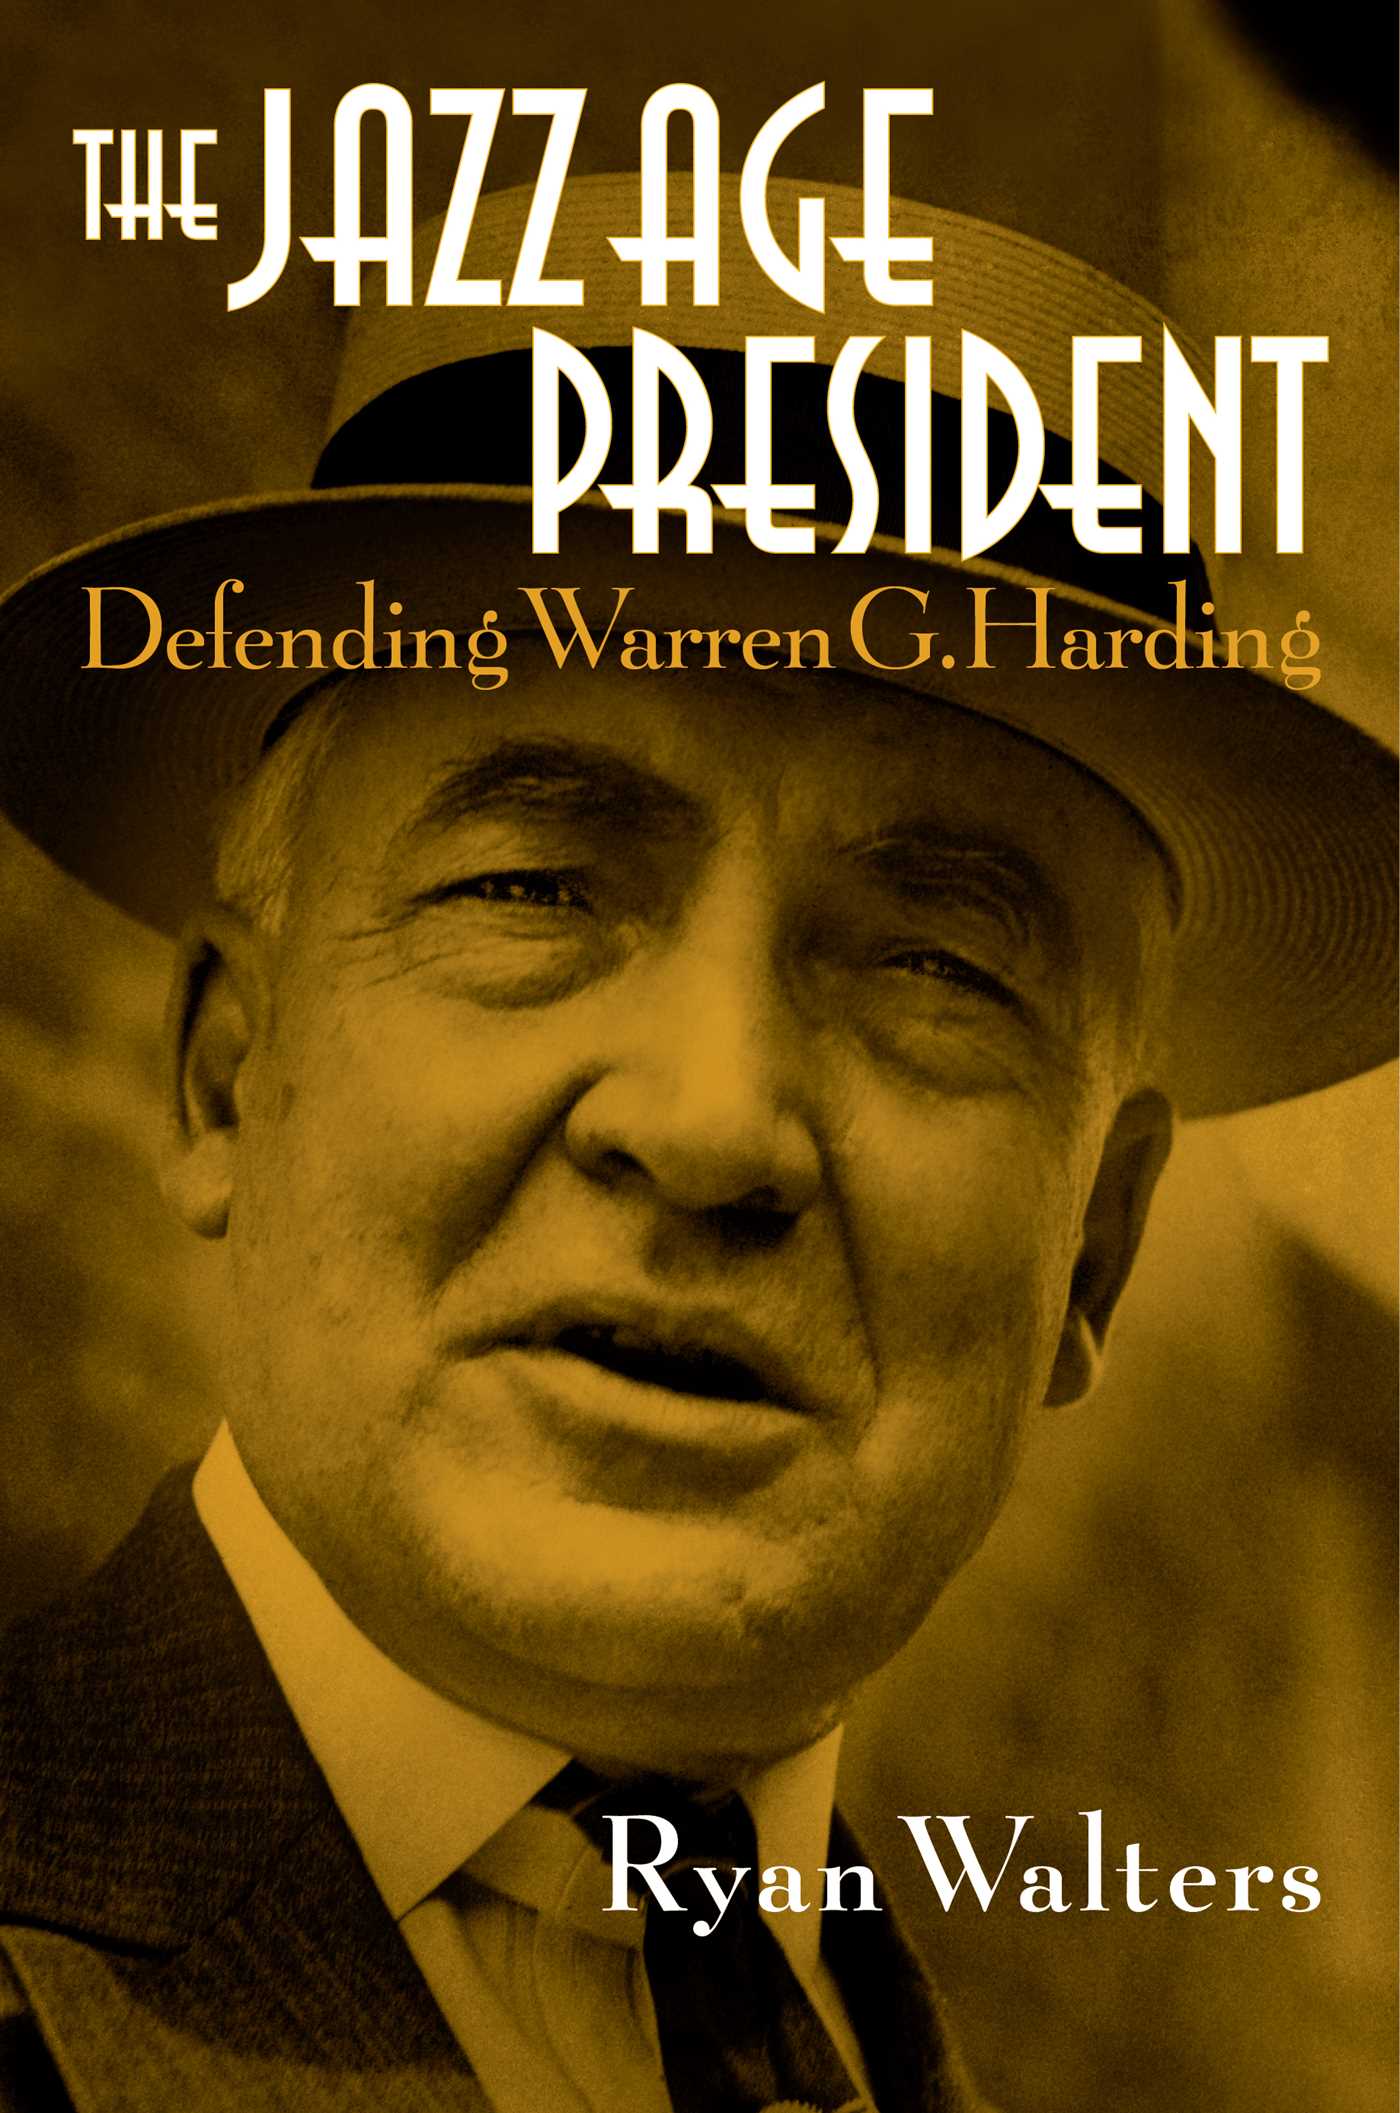 The Jazz Age President - Defending Warren G. Harding